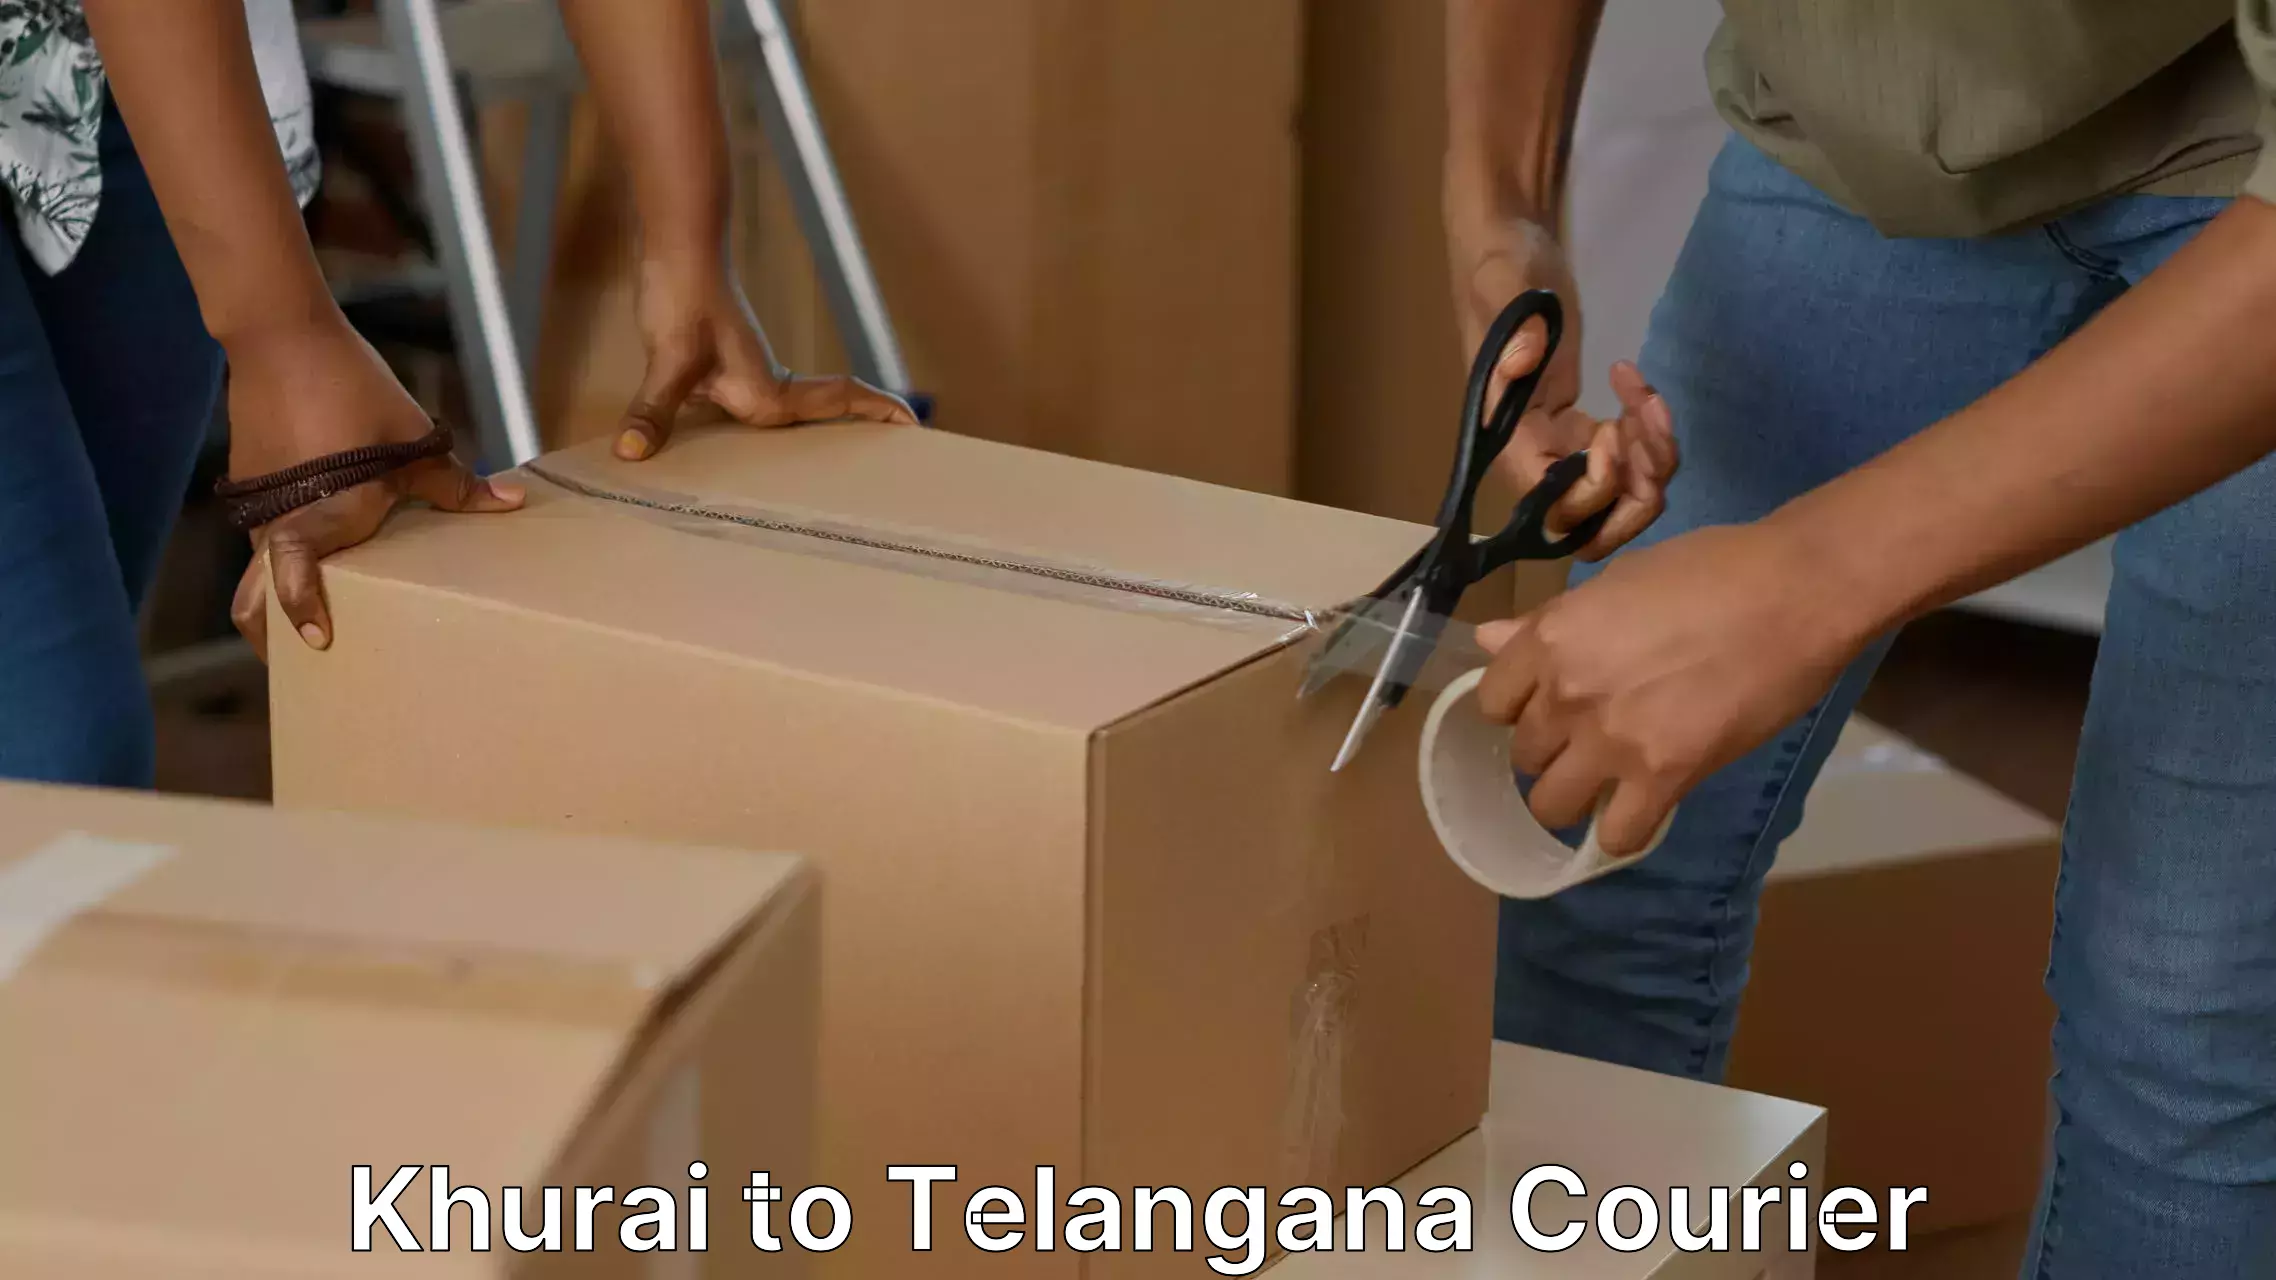 Furniture transport and storage Khurai to Telangana